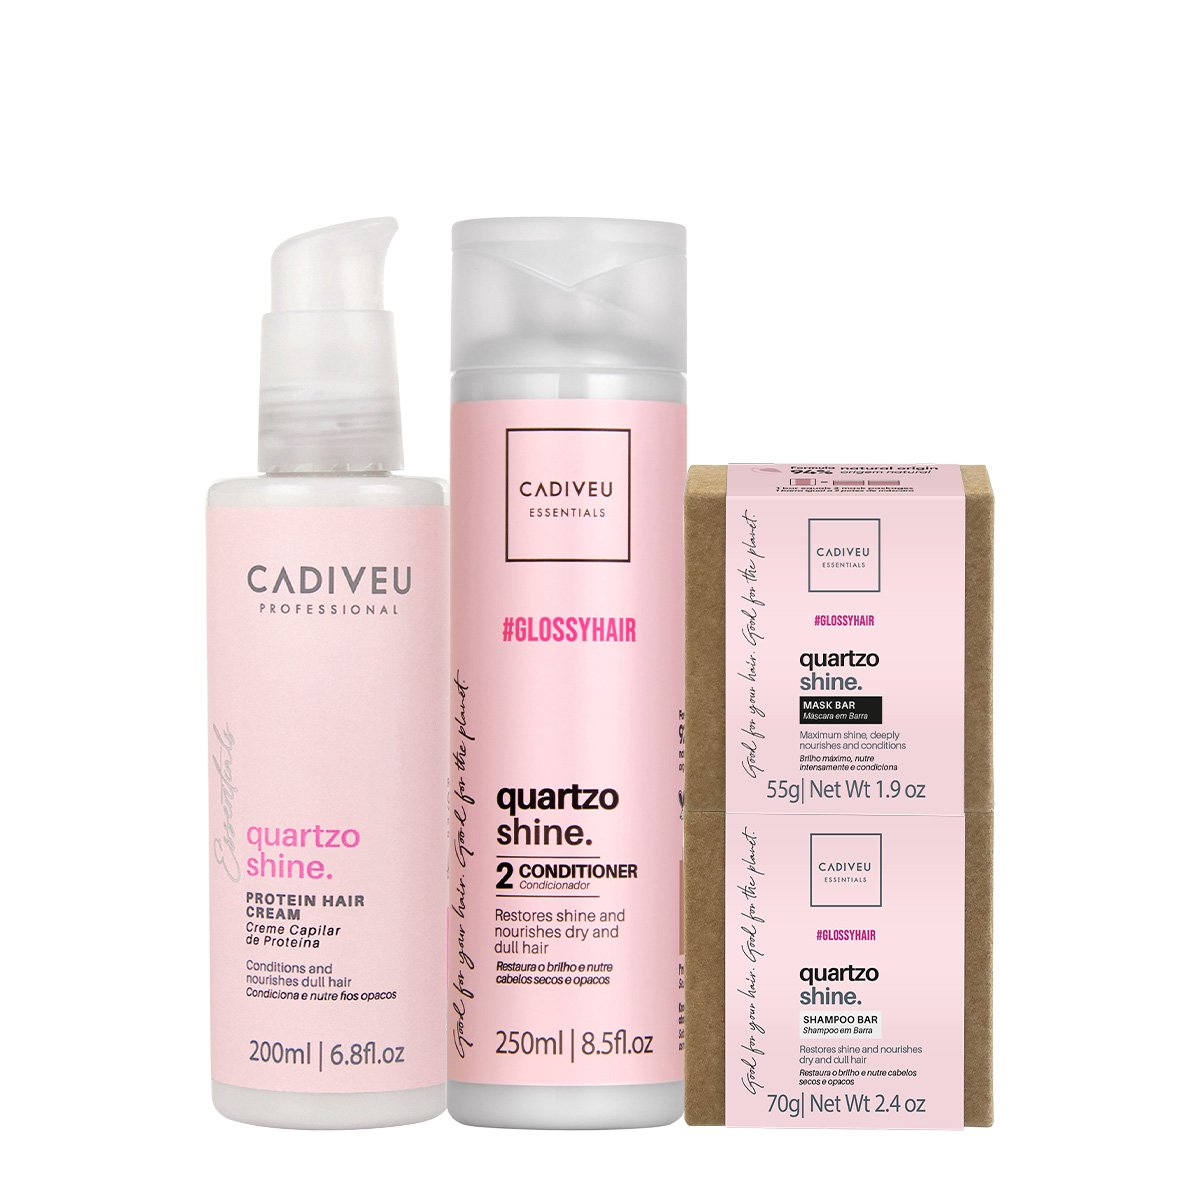 Kit Cadiveu Professional Essentials Quartzo Shine Shampoo em Barra Condicionador Mascara em Barra e Pre Shampoo (4 produ ÚNICO 1